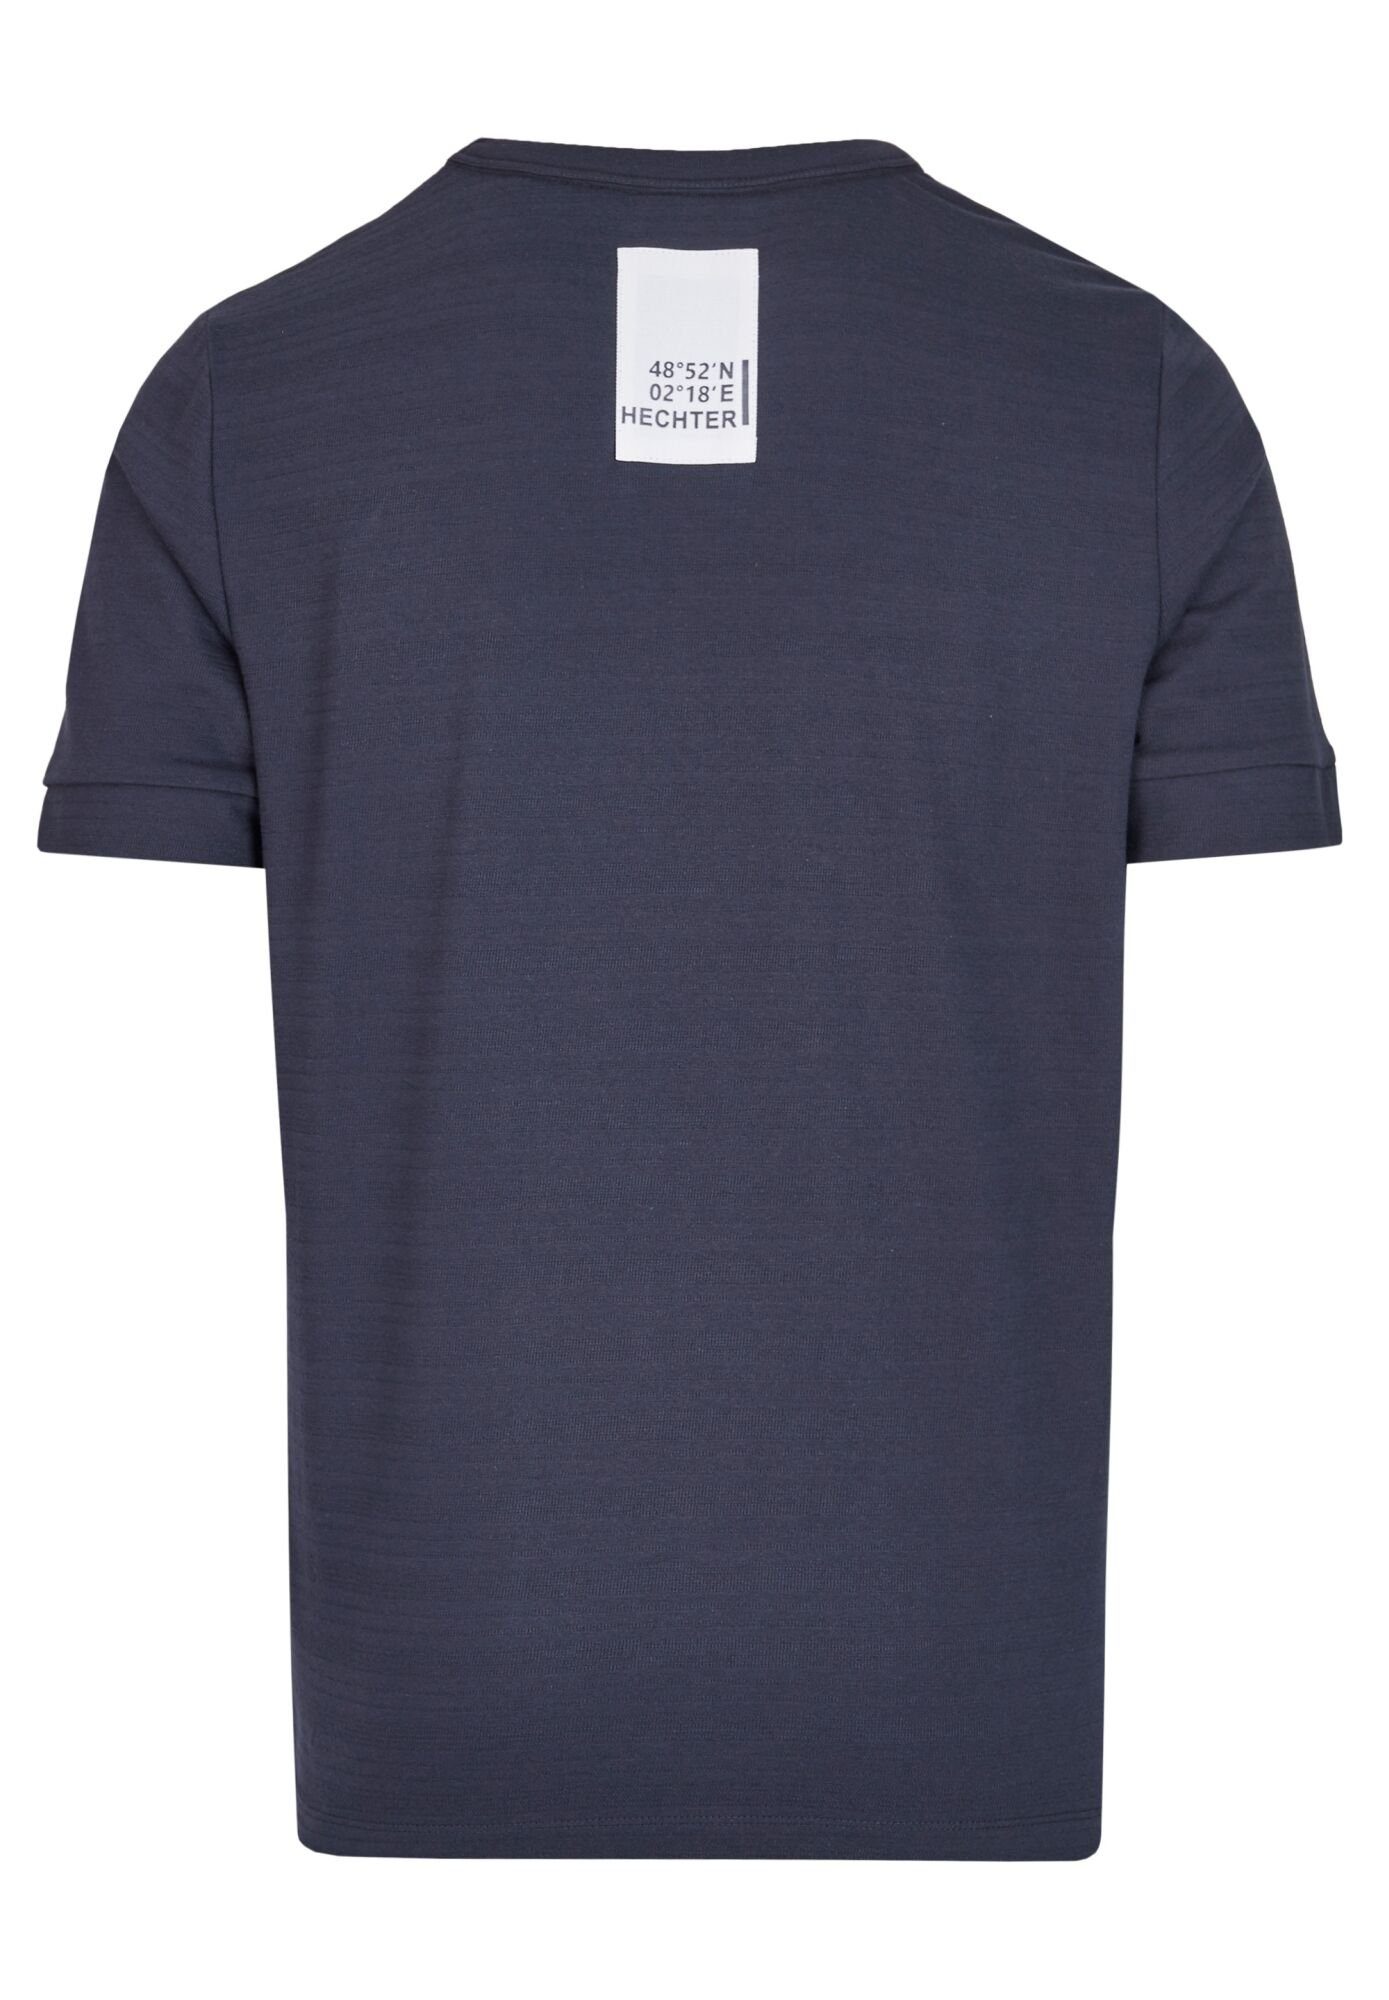 PARIS blue Print-Shirt Marken-Applikation HECHTER Nacken midnight im